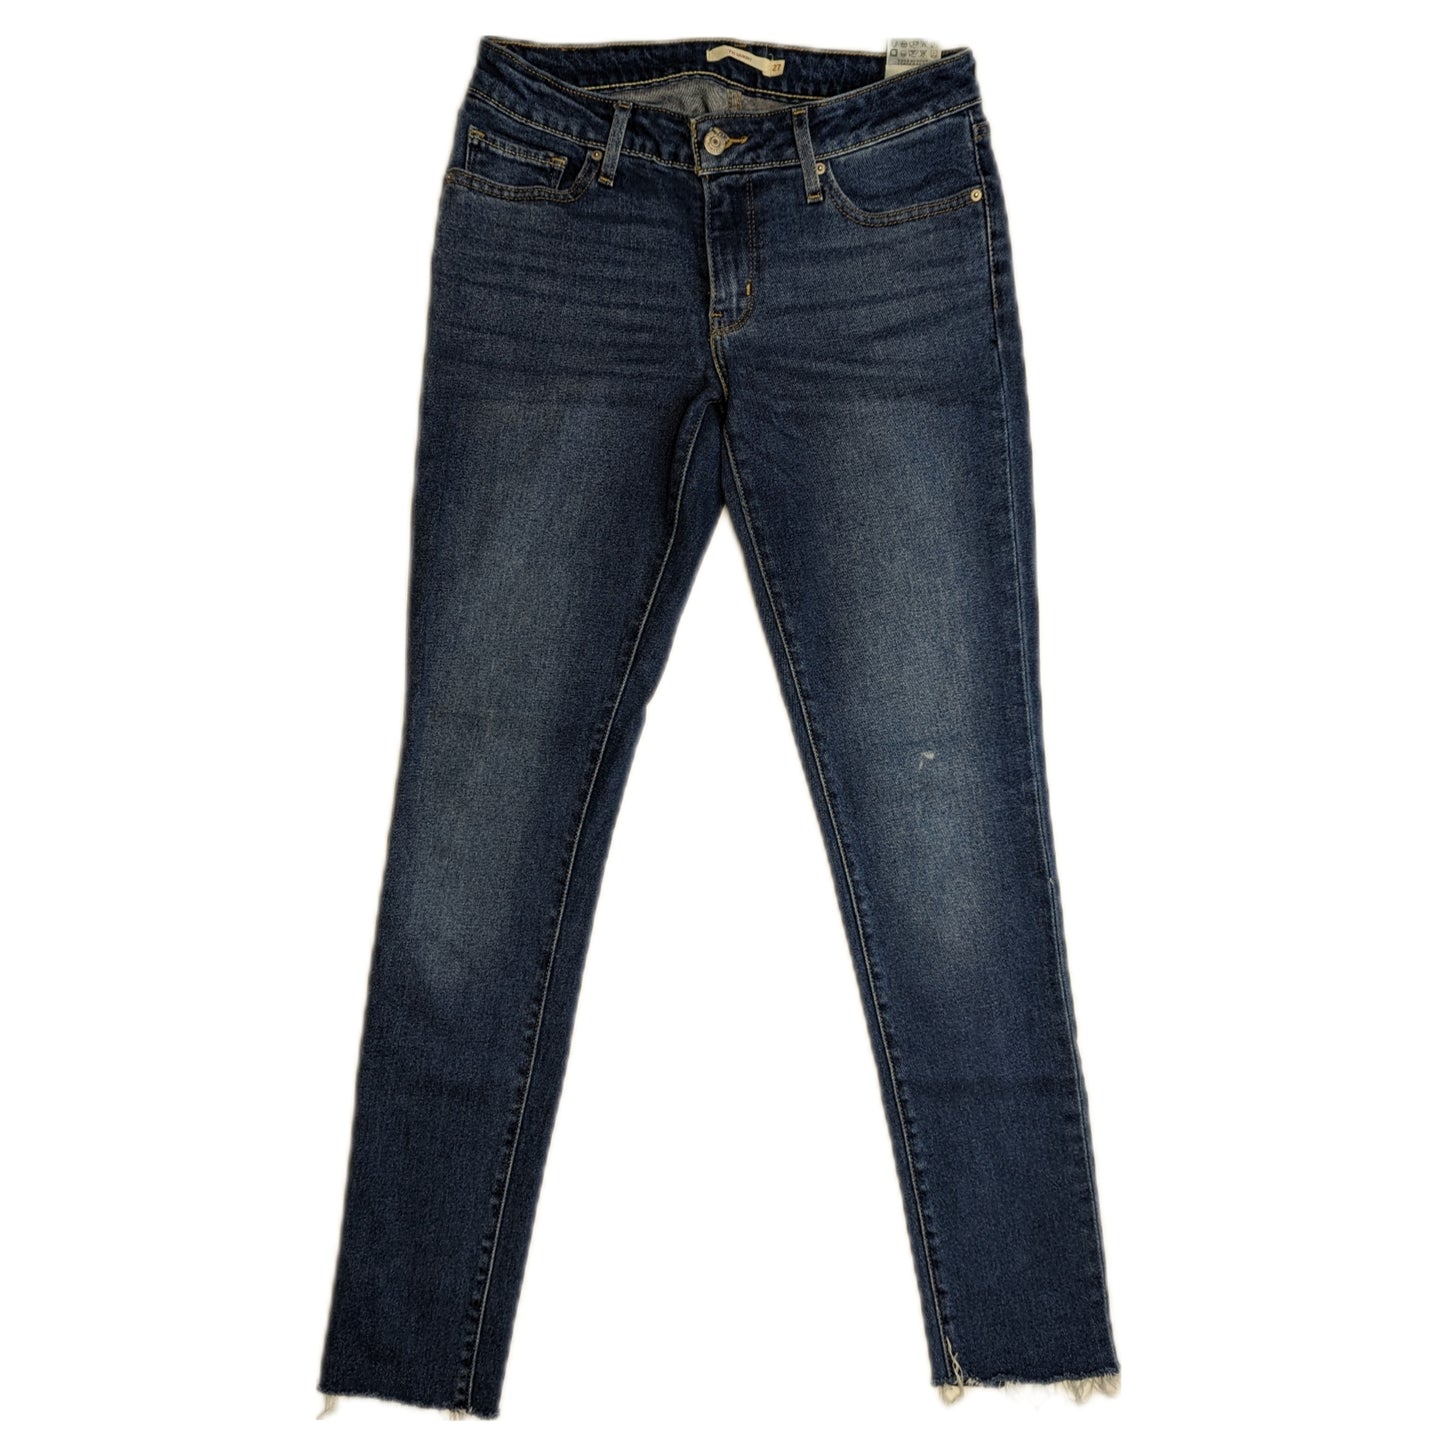 Levi's 711 Skinny Stretch Blue Jeans Women W30/L31